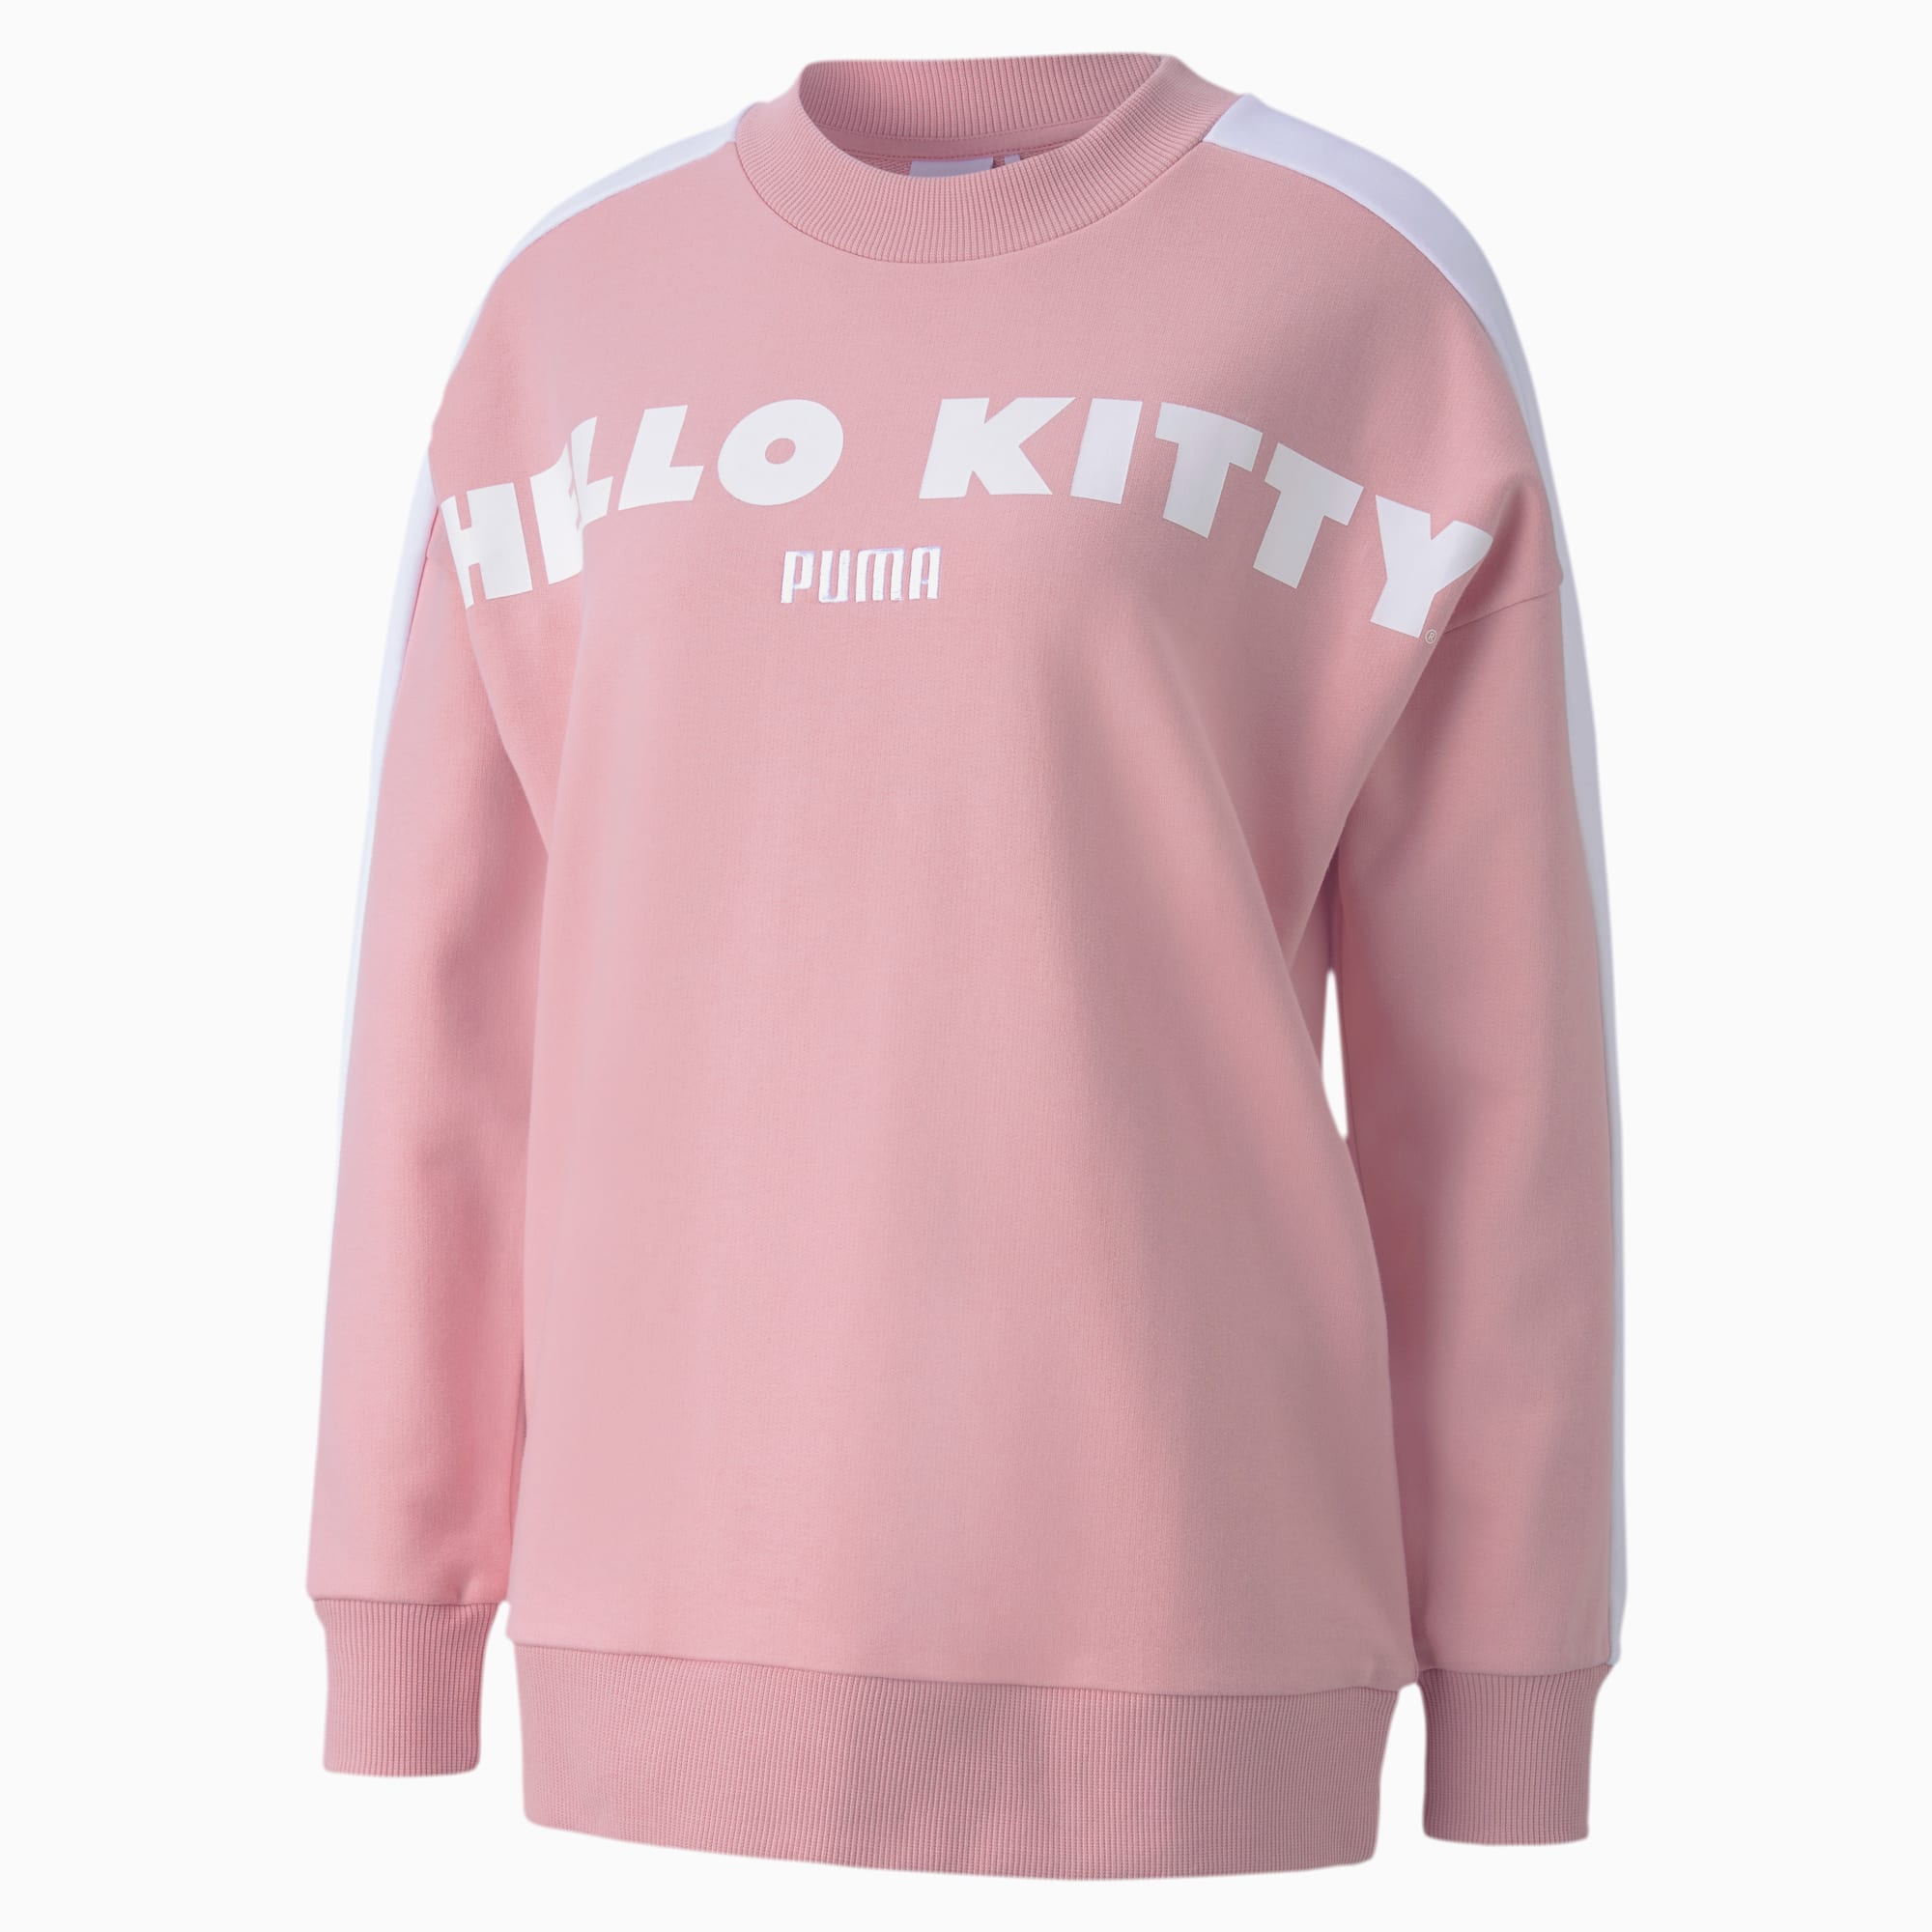 hello kitty women's sweatshirt